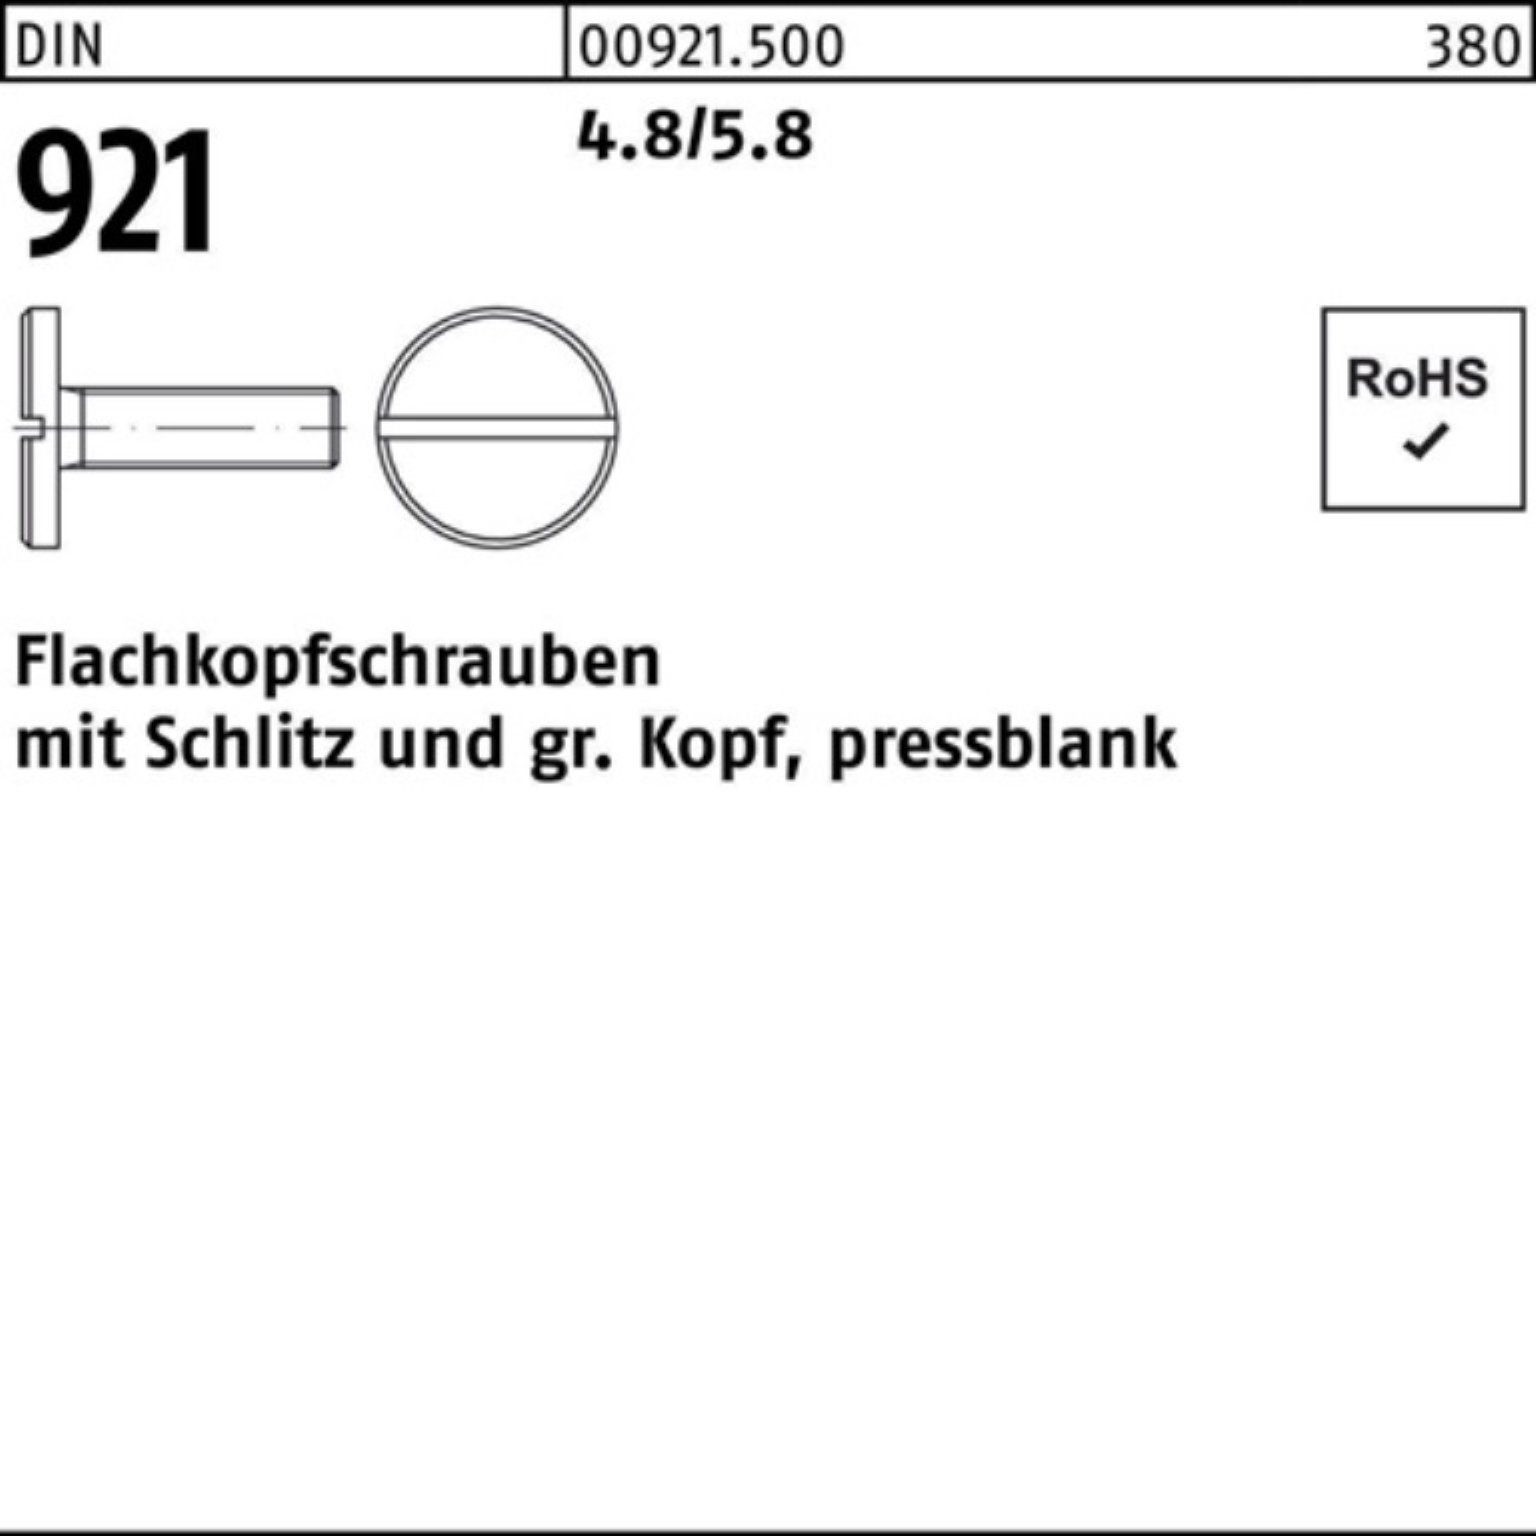 Reyher Schraube 100er Pack Flachkopfschraube DIN 921 Schlitz M4x 5 4.8/5.8 100 Stück